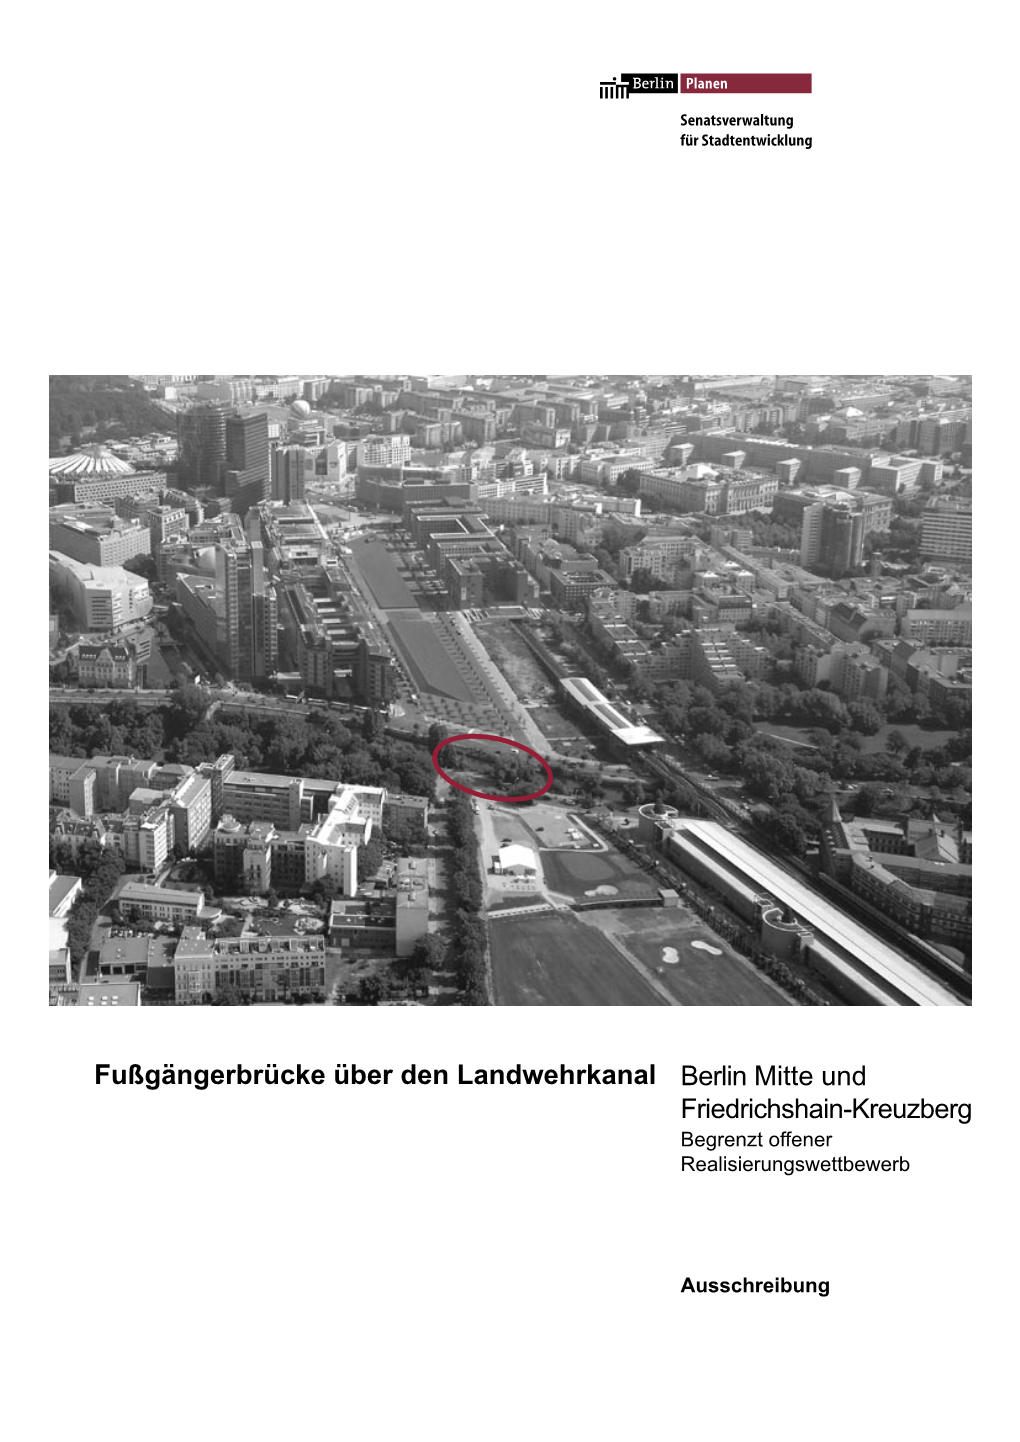 Fußgängerbrücke Über Den Landwehrkanal Berlin Mitte Und Friedrichshain-Kreuzberg Begrenzt Offener Realisierungswettbewerb